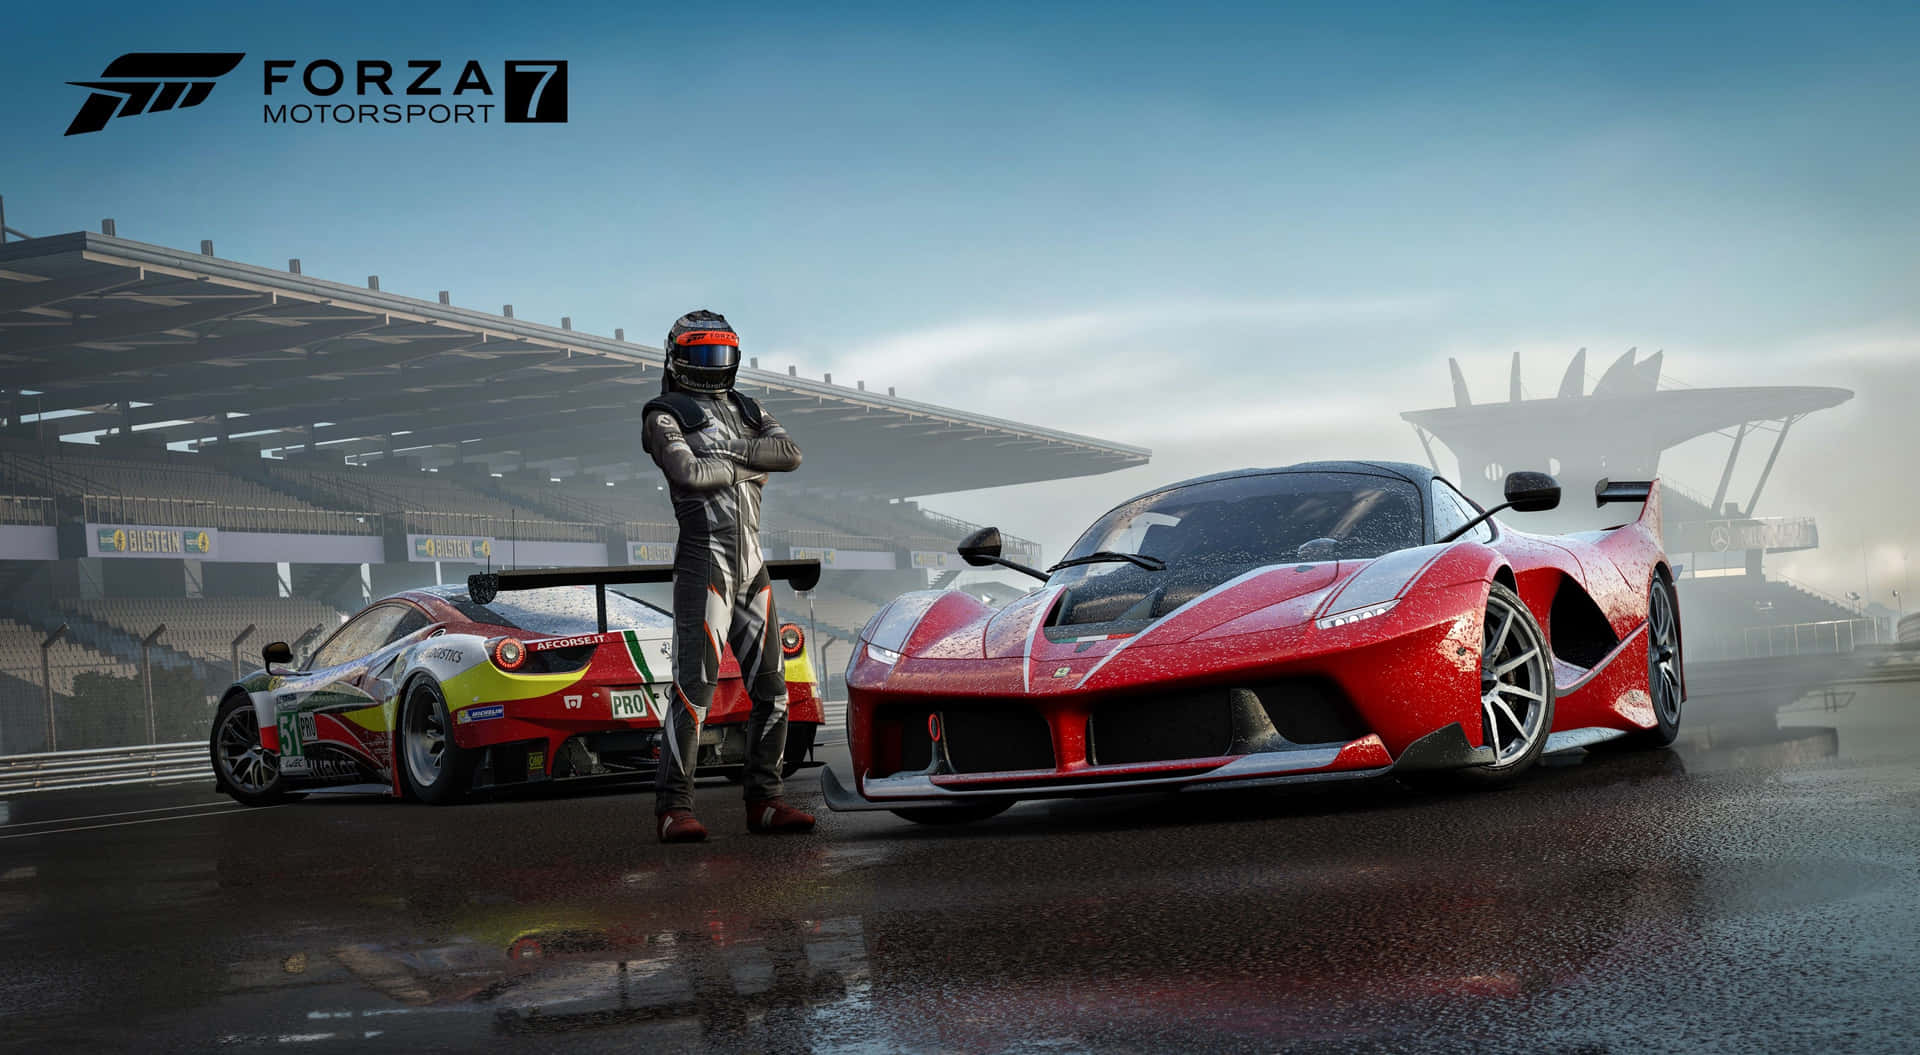 Gratuito, Forza 6 Apex é versão em 4K do game para PC